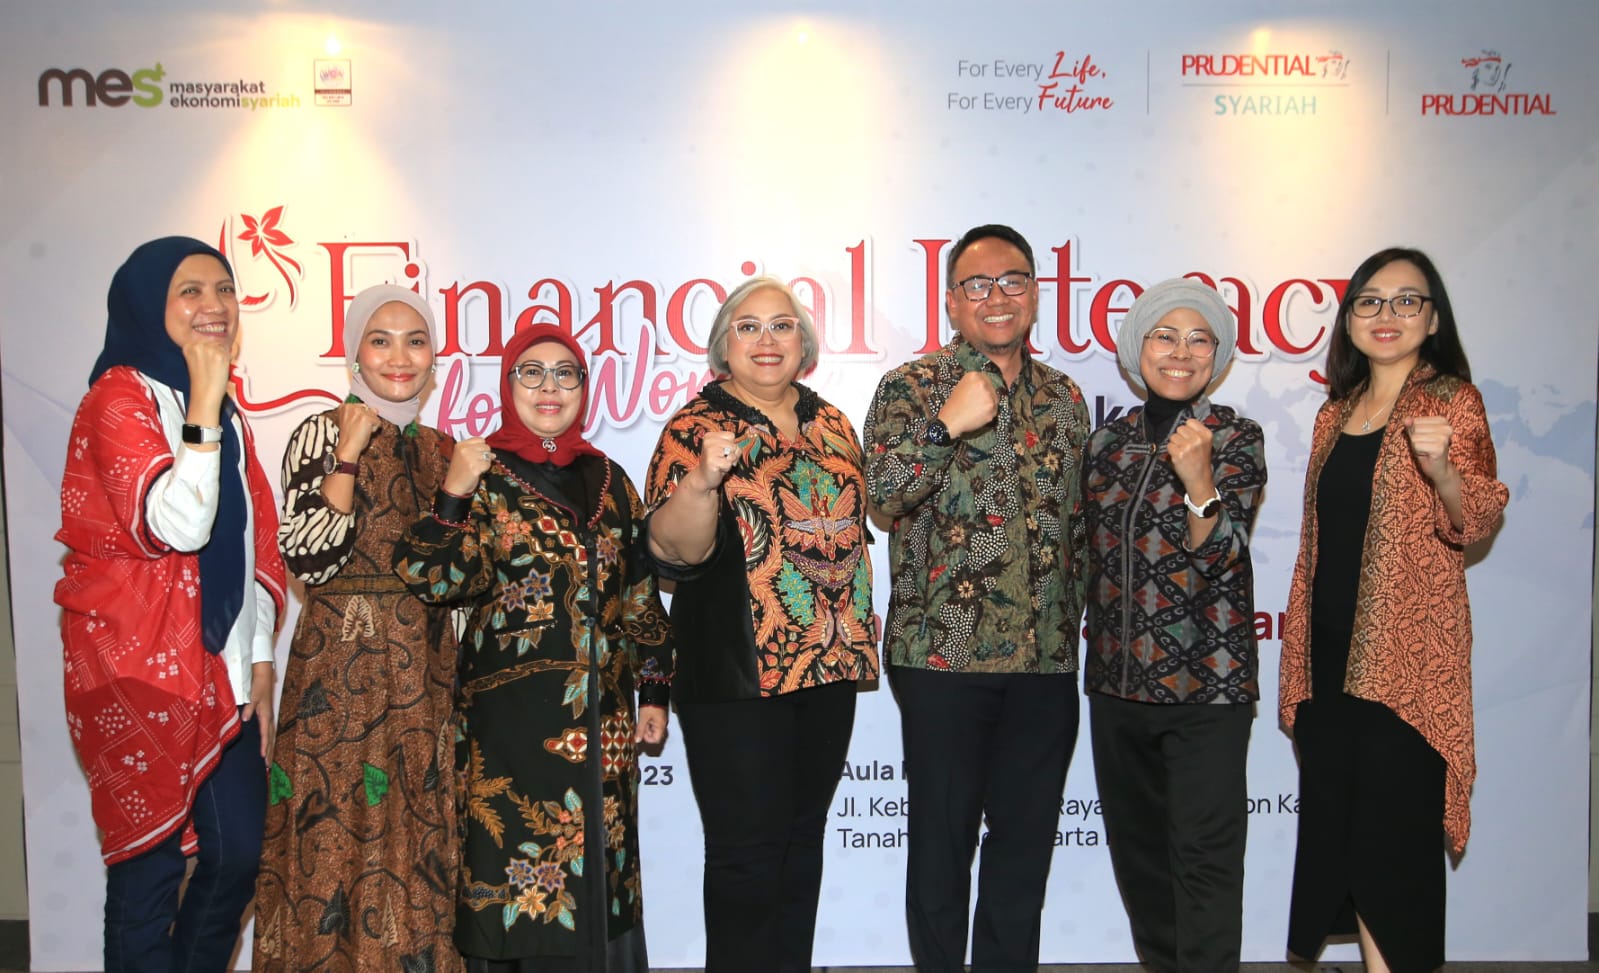 Gandeng OJK, KPPPA, dan MES, Prudential Indonesia dan Prudential Syariah Dukung Jutaan Perempuan Indonesia Tingkatkan Literasi Keuangan